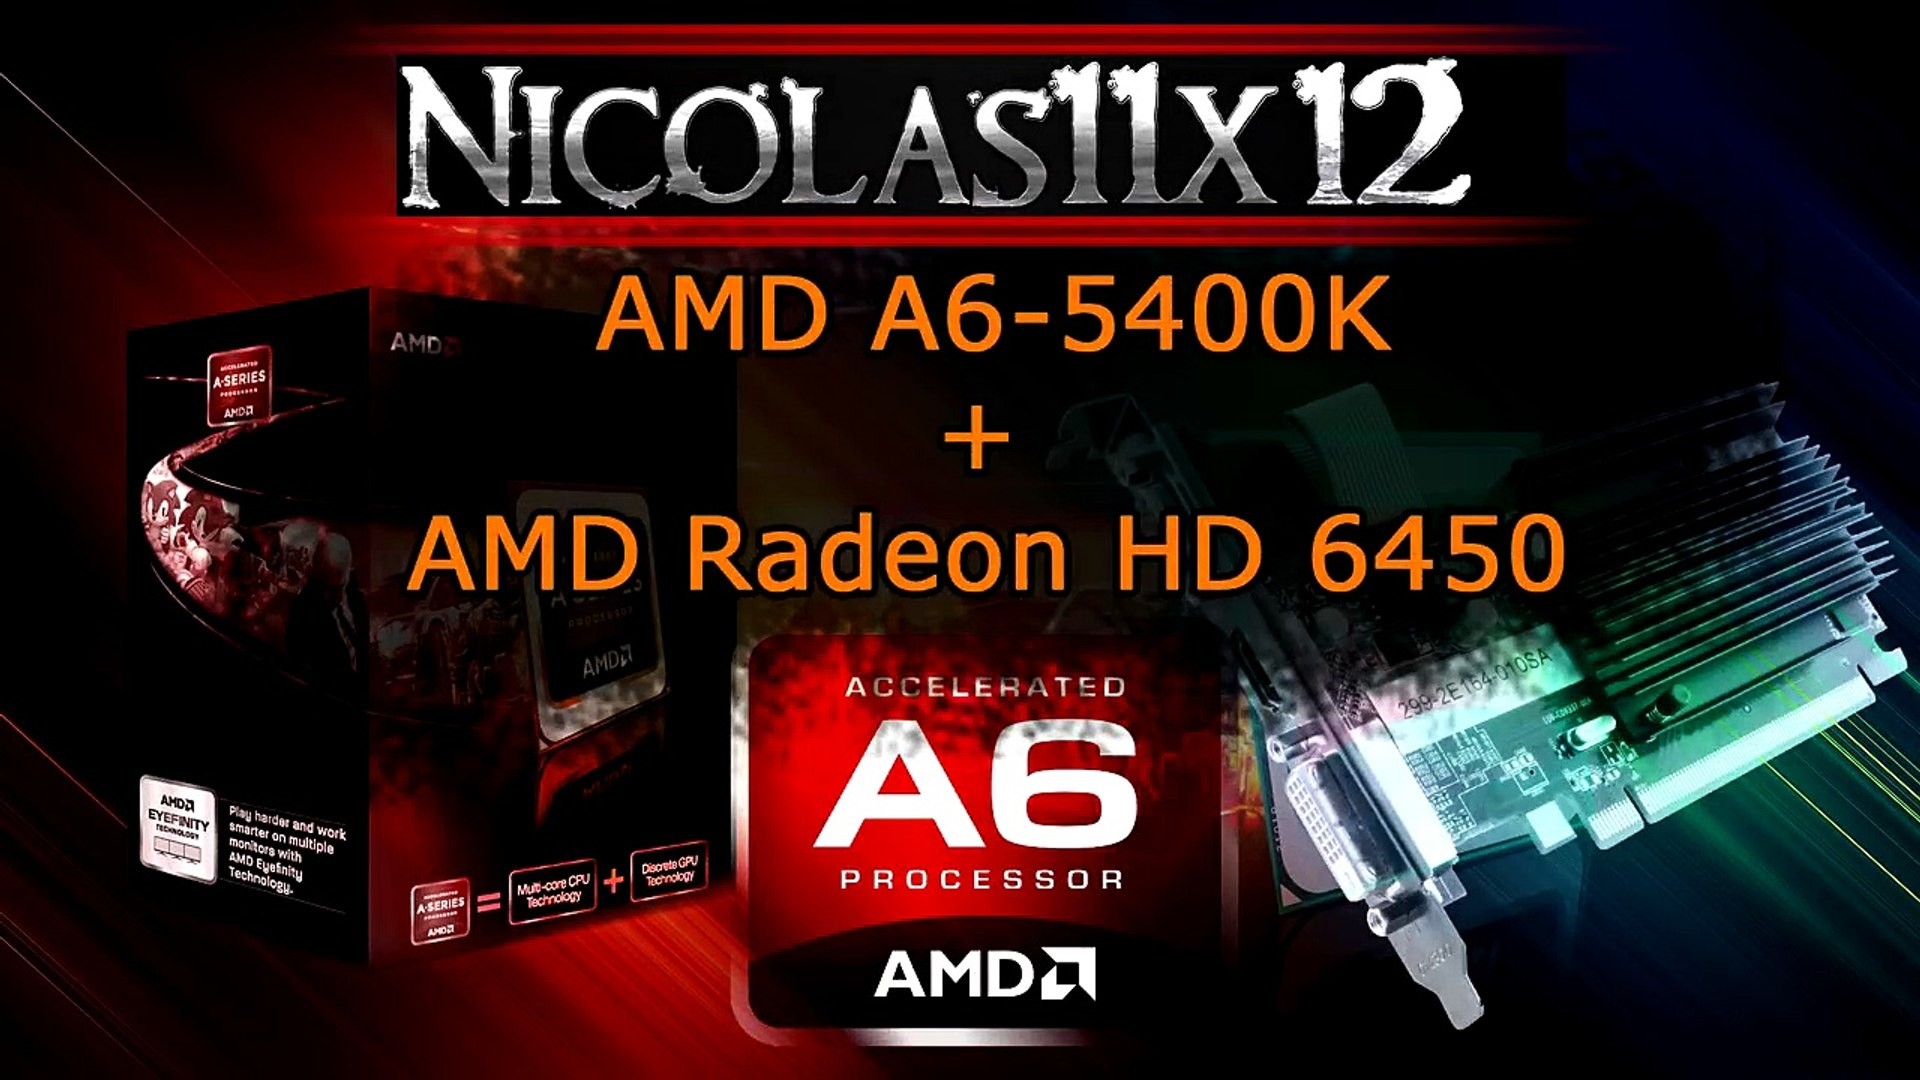 1920x1080 [DEUTSCH] AMD A6-5400K APU in Dual Graphics mit der AMD Radeon HD 6450  Testbericht - video dailymotion